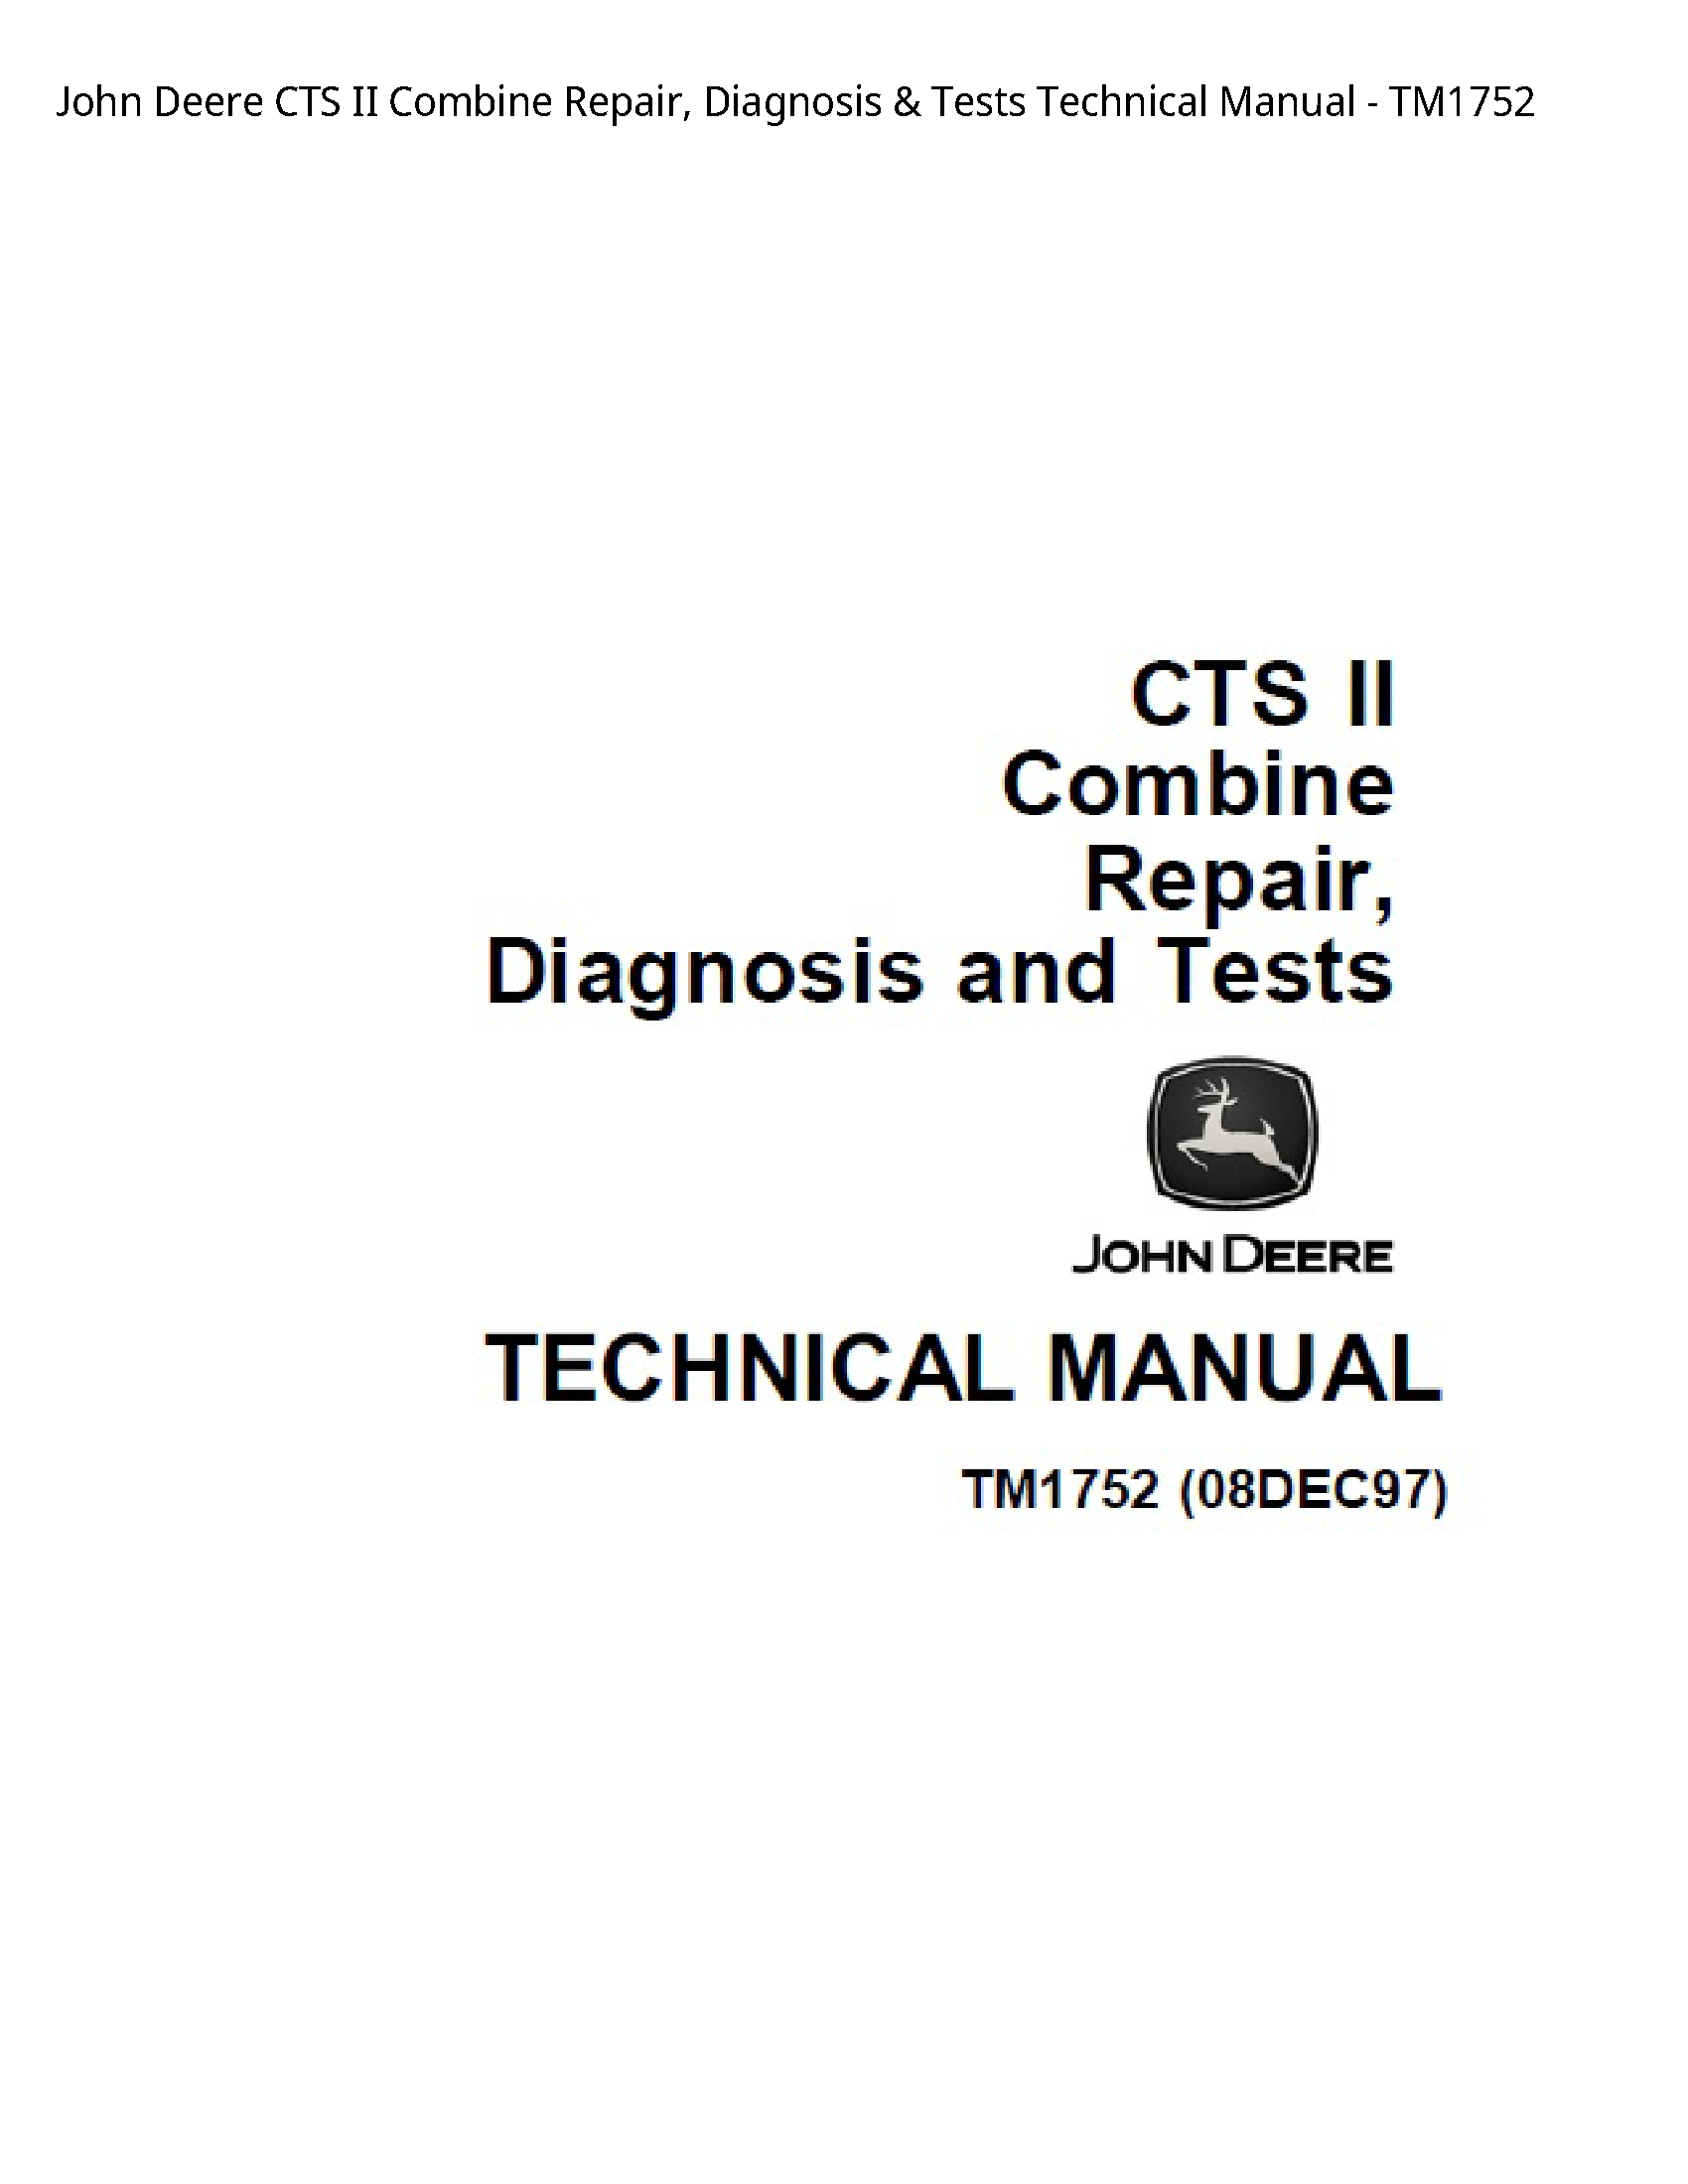 John Deere CTS II Combine Repair manual